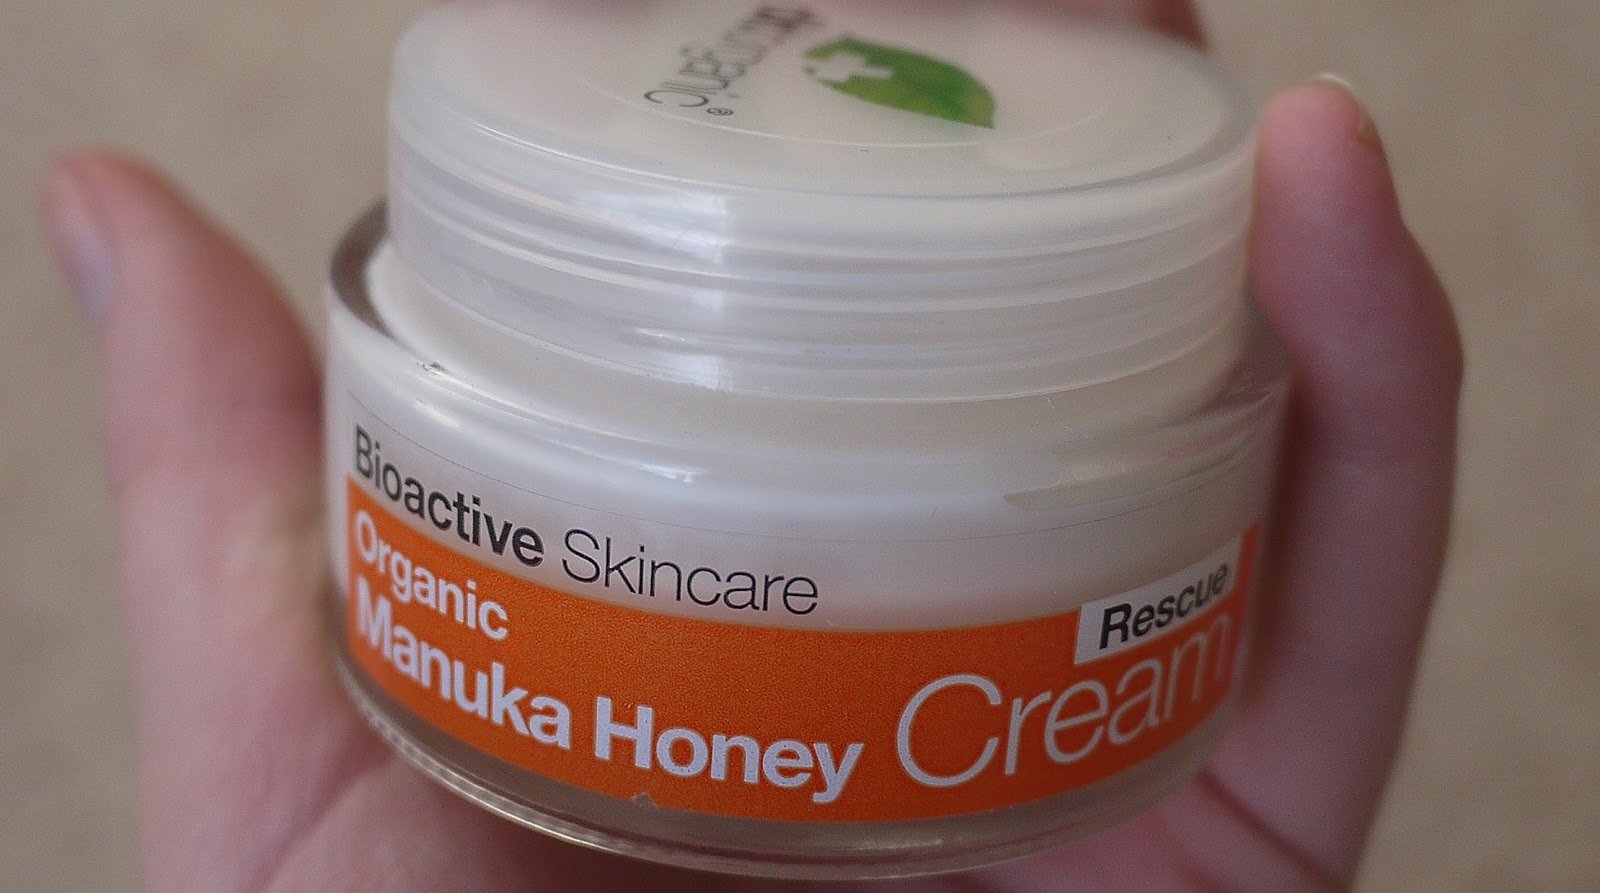 Dr Organics Manuka Honey Rescue Cream Review